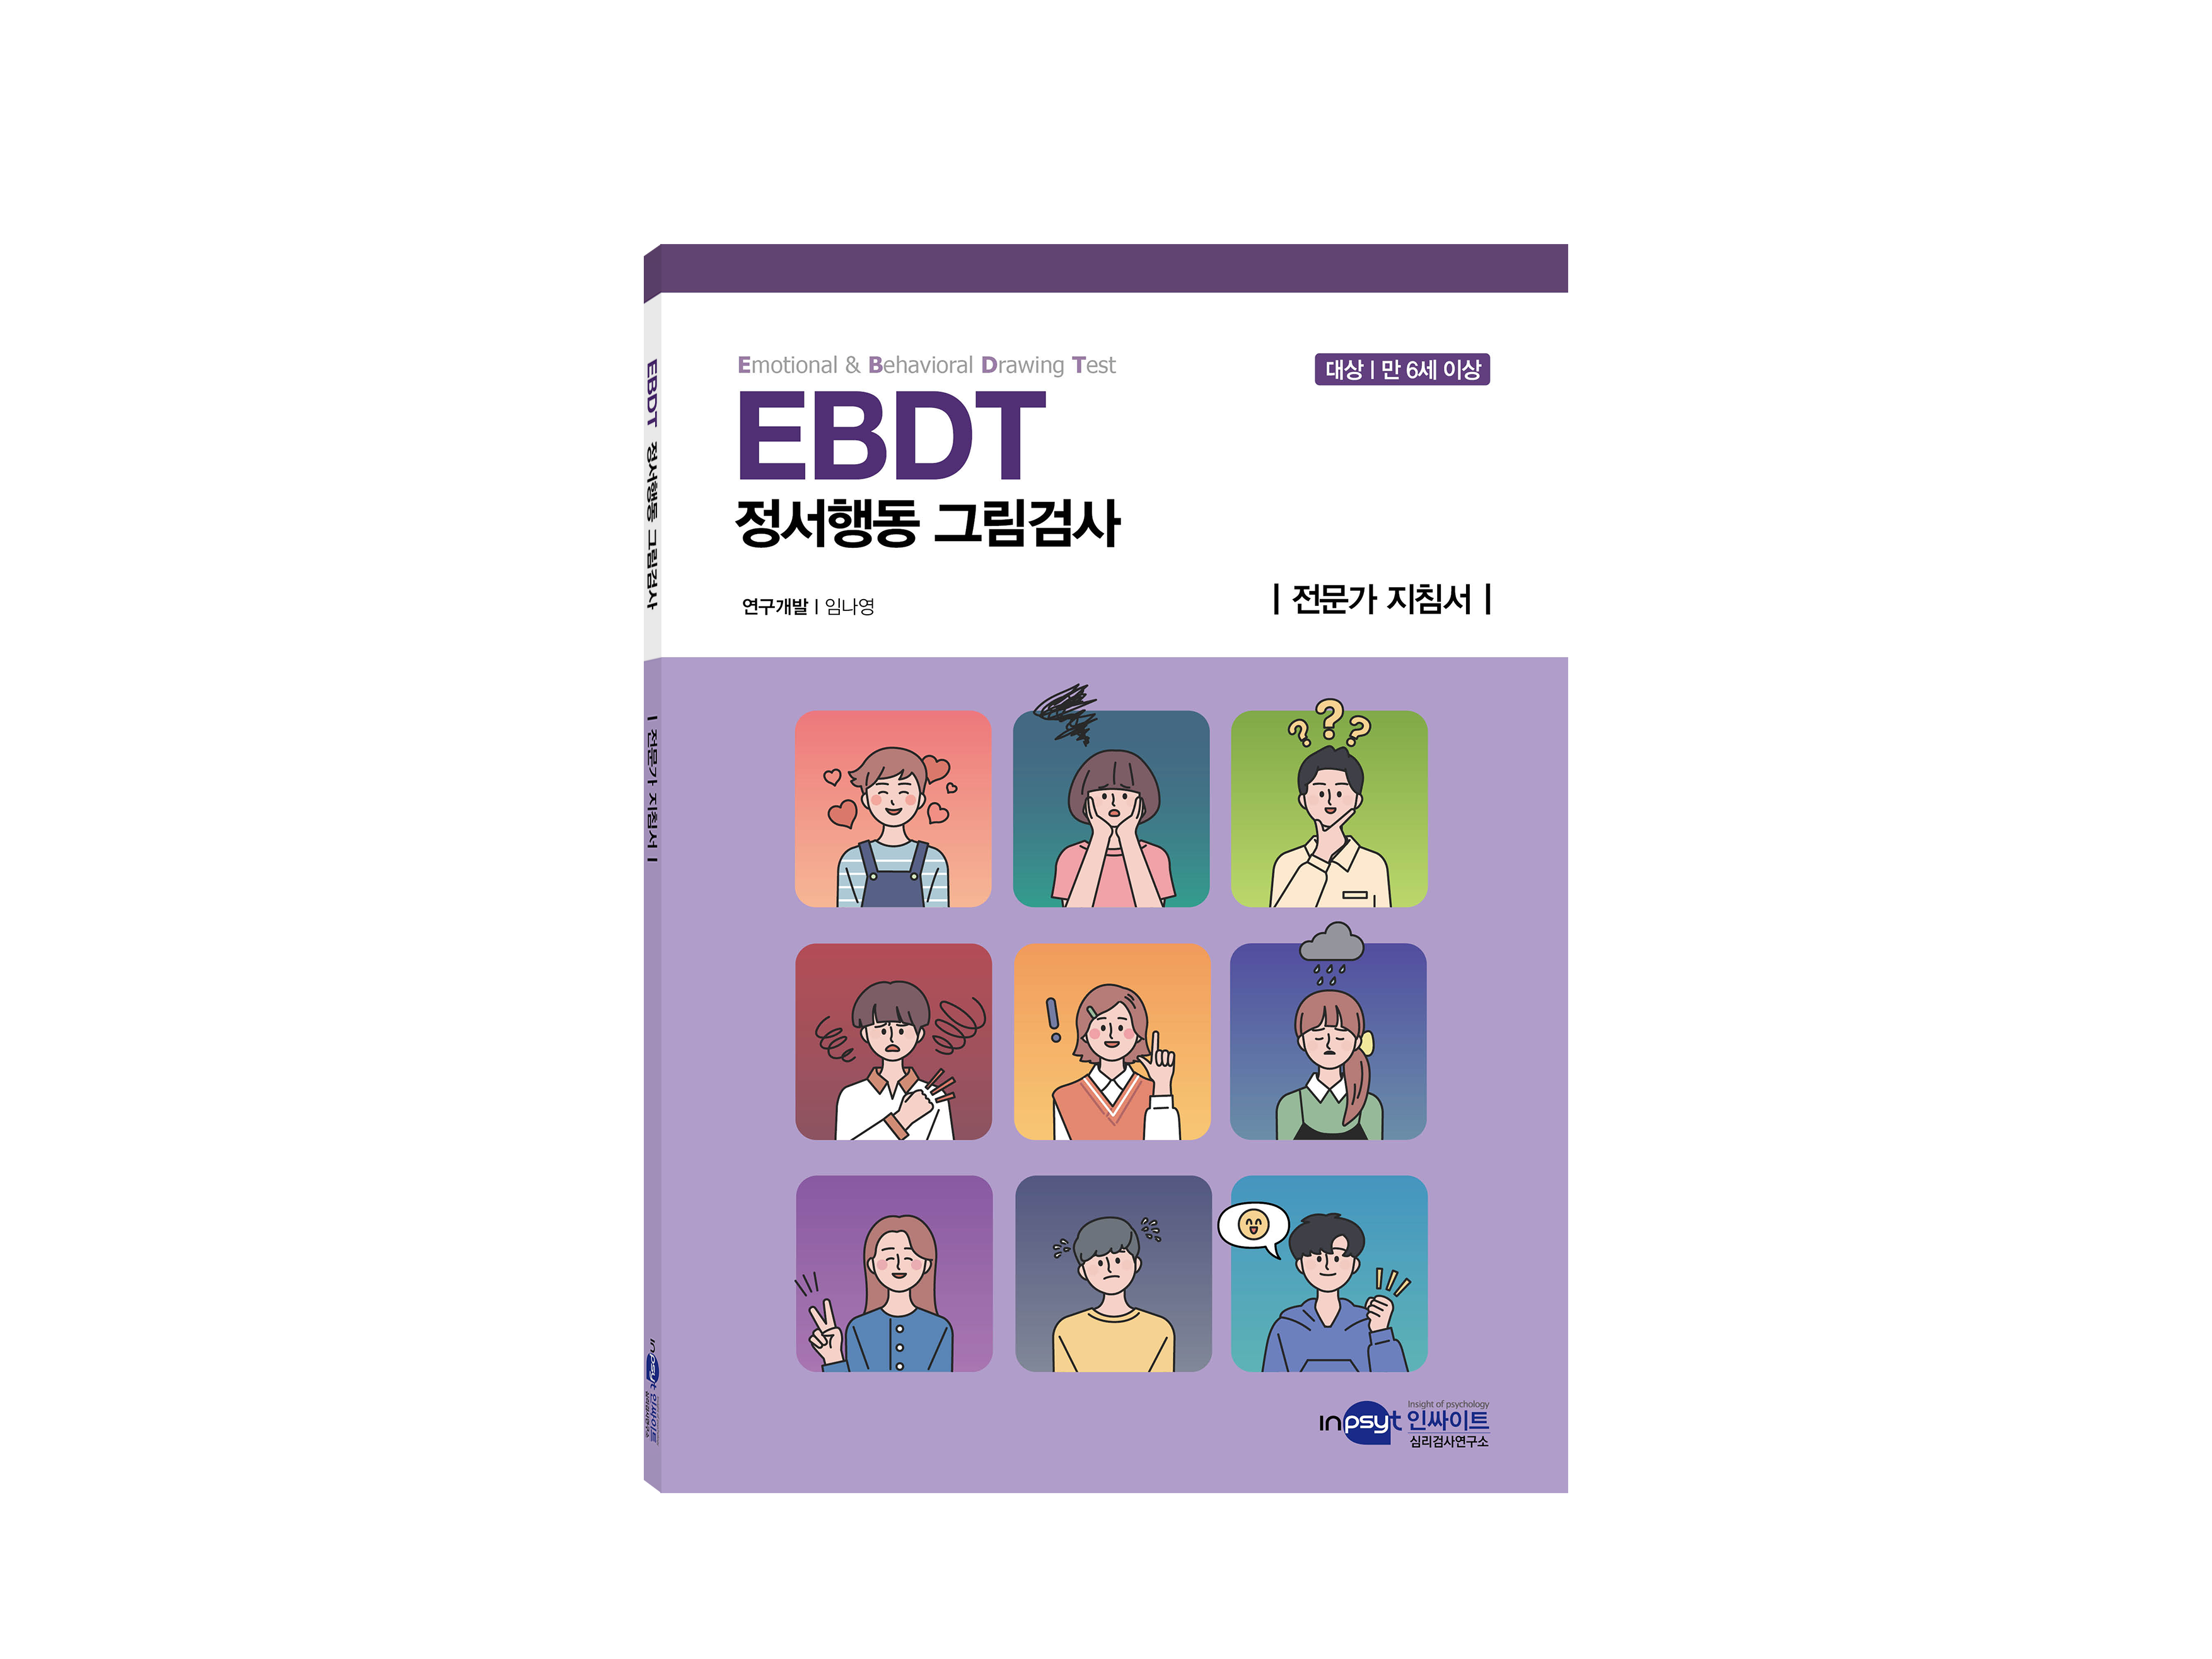 [인쇄용]EBDT 정서행동 그림검사_지침서 복사.png